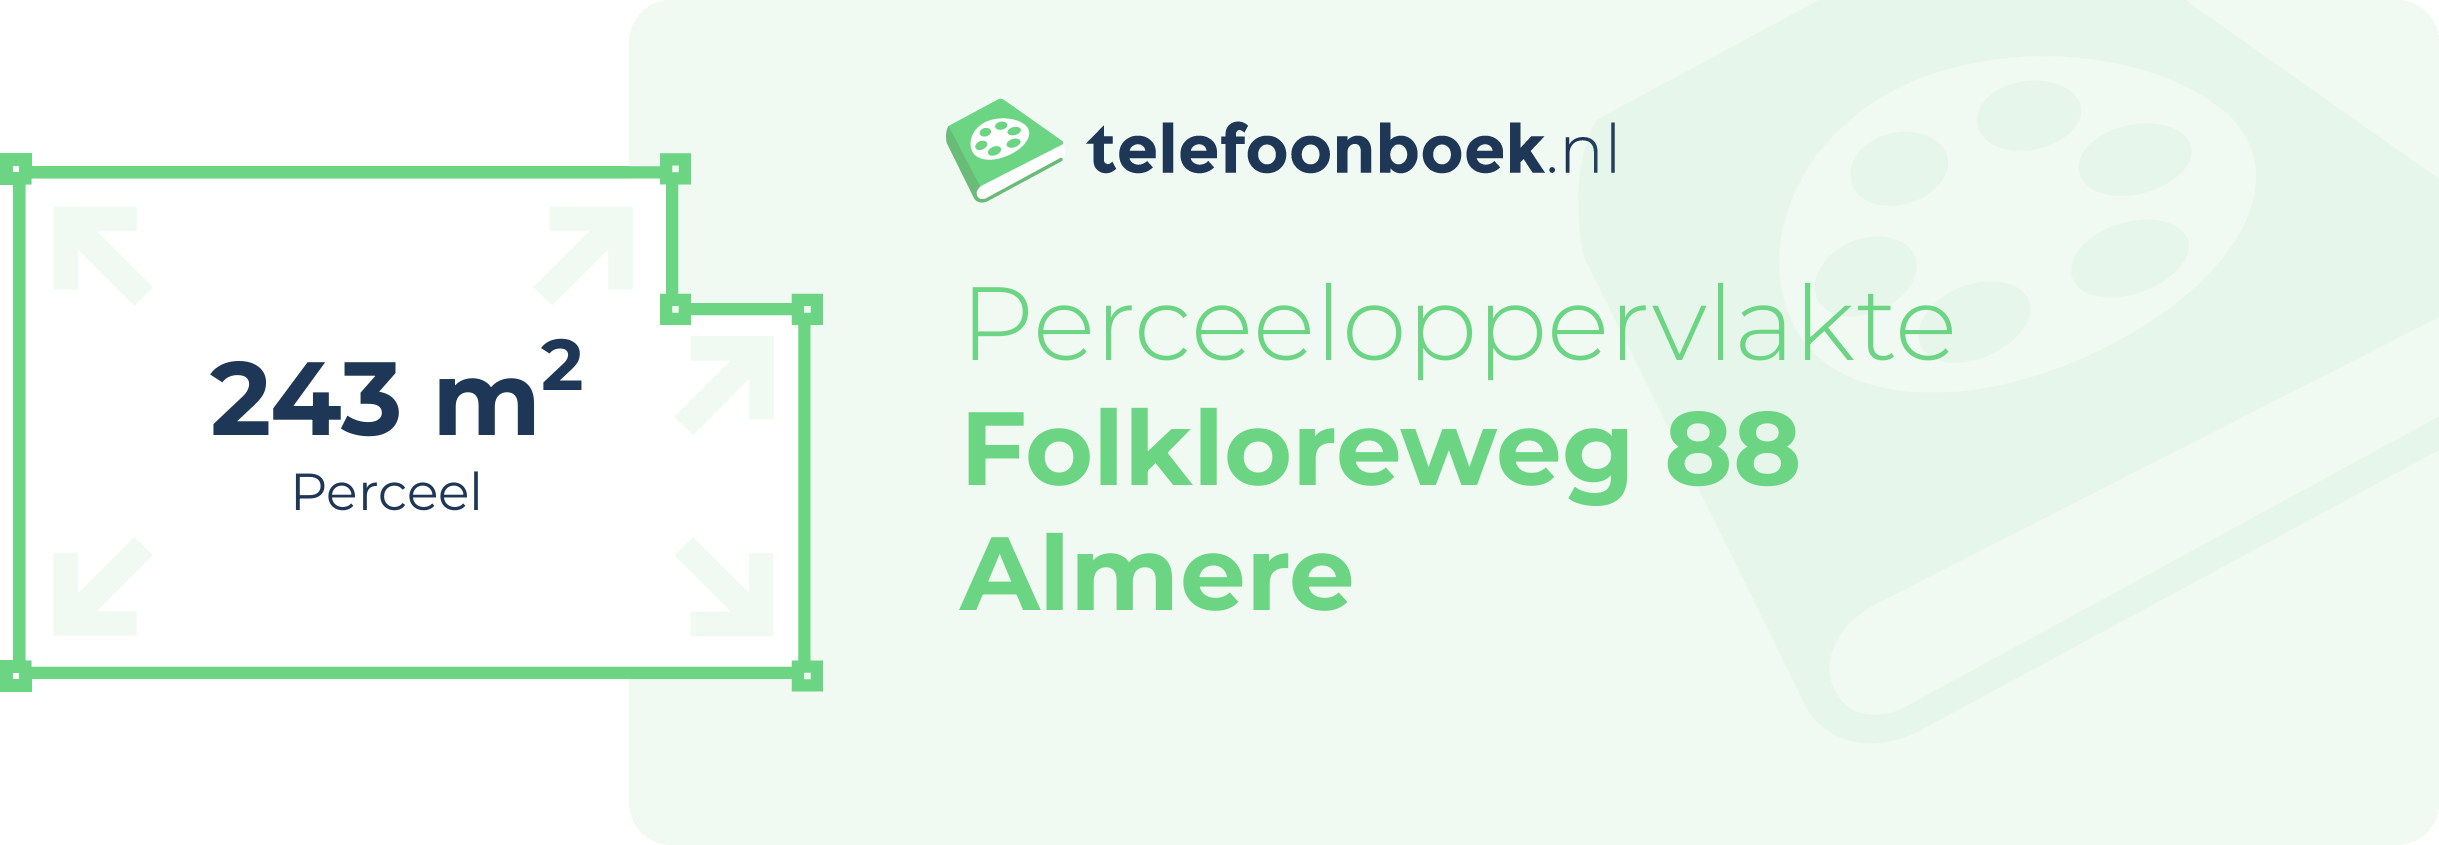 Perceeloppervlakte Folkloreweg 88 Almere